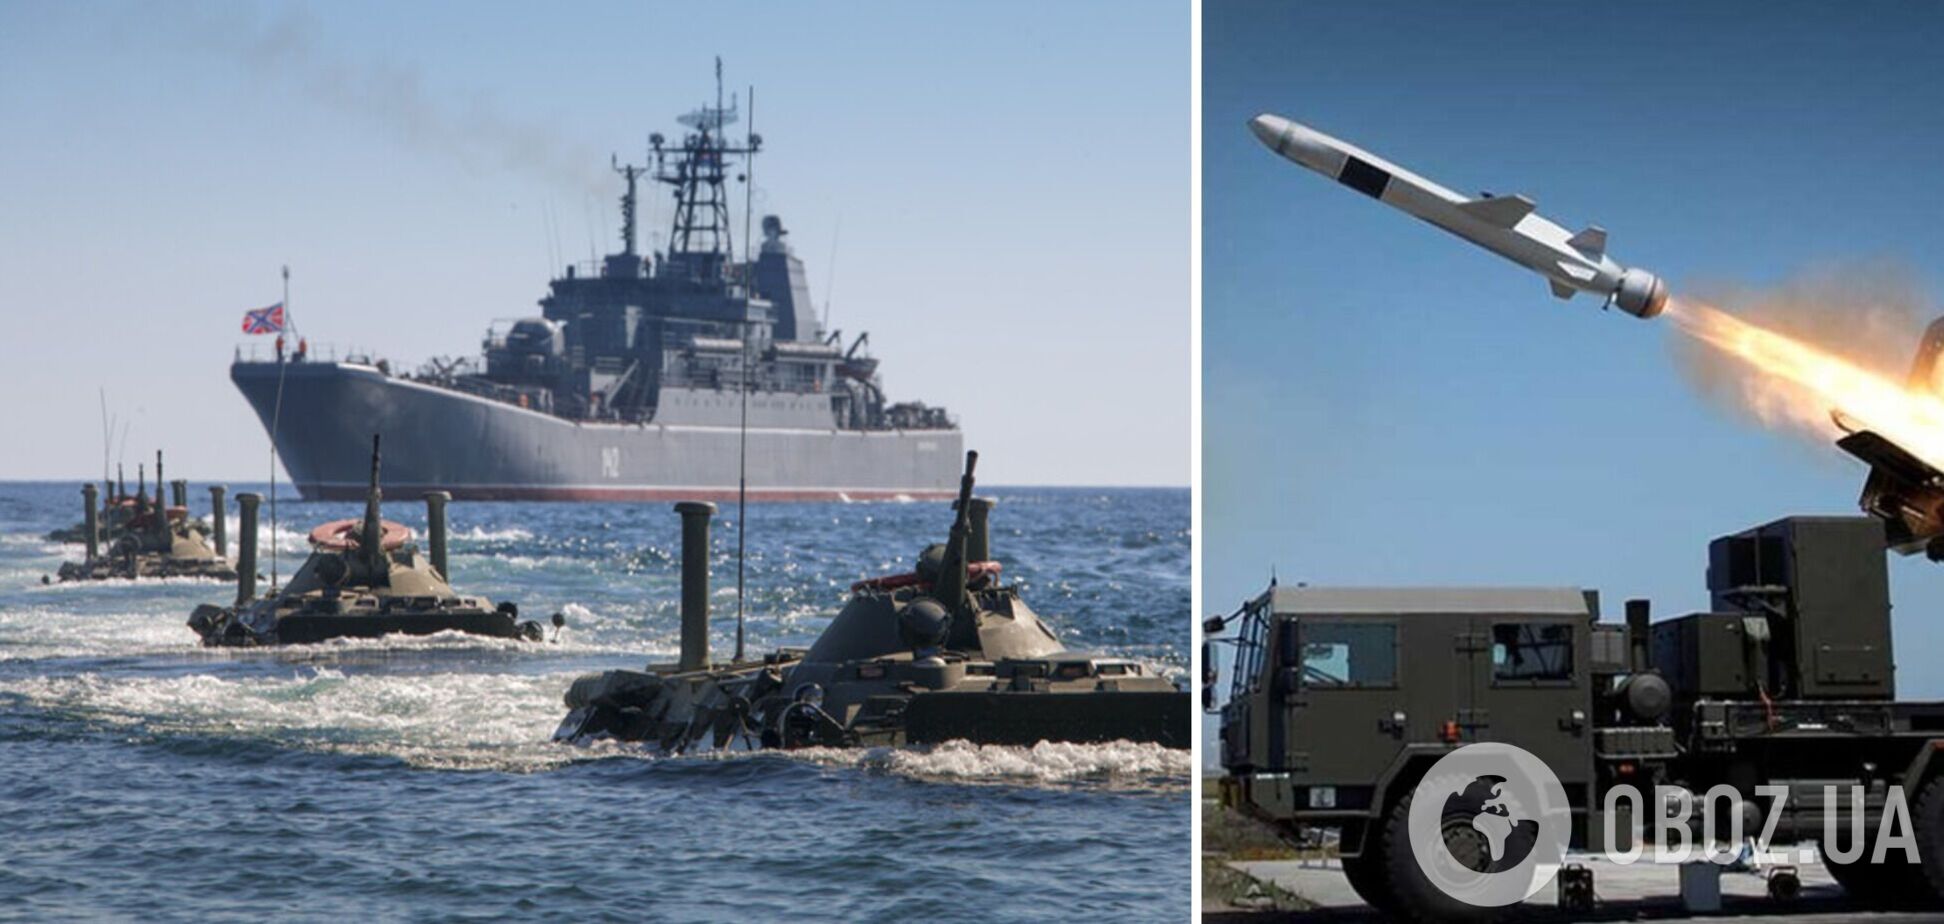 РФ спрятала корабли в Азовском море, но их будут 'успешно топить', – генерал